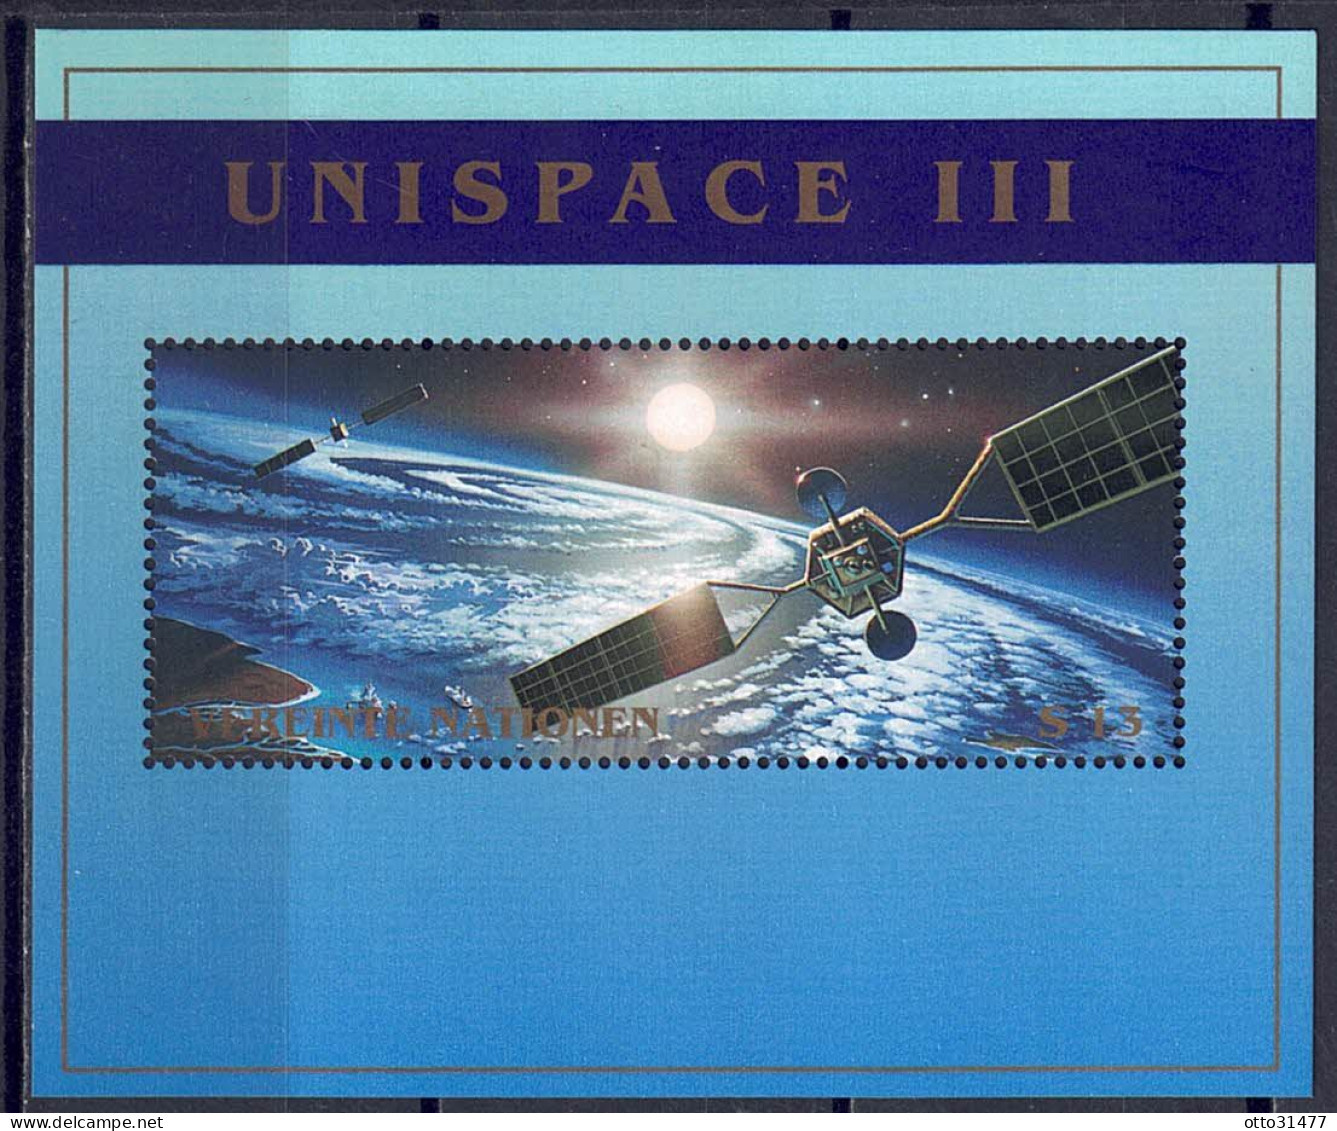 UNO Wien 1999 - UNISPACE II, Block 10, Postfrisch ** / MNH - Neufs